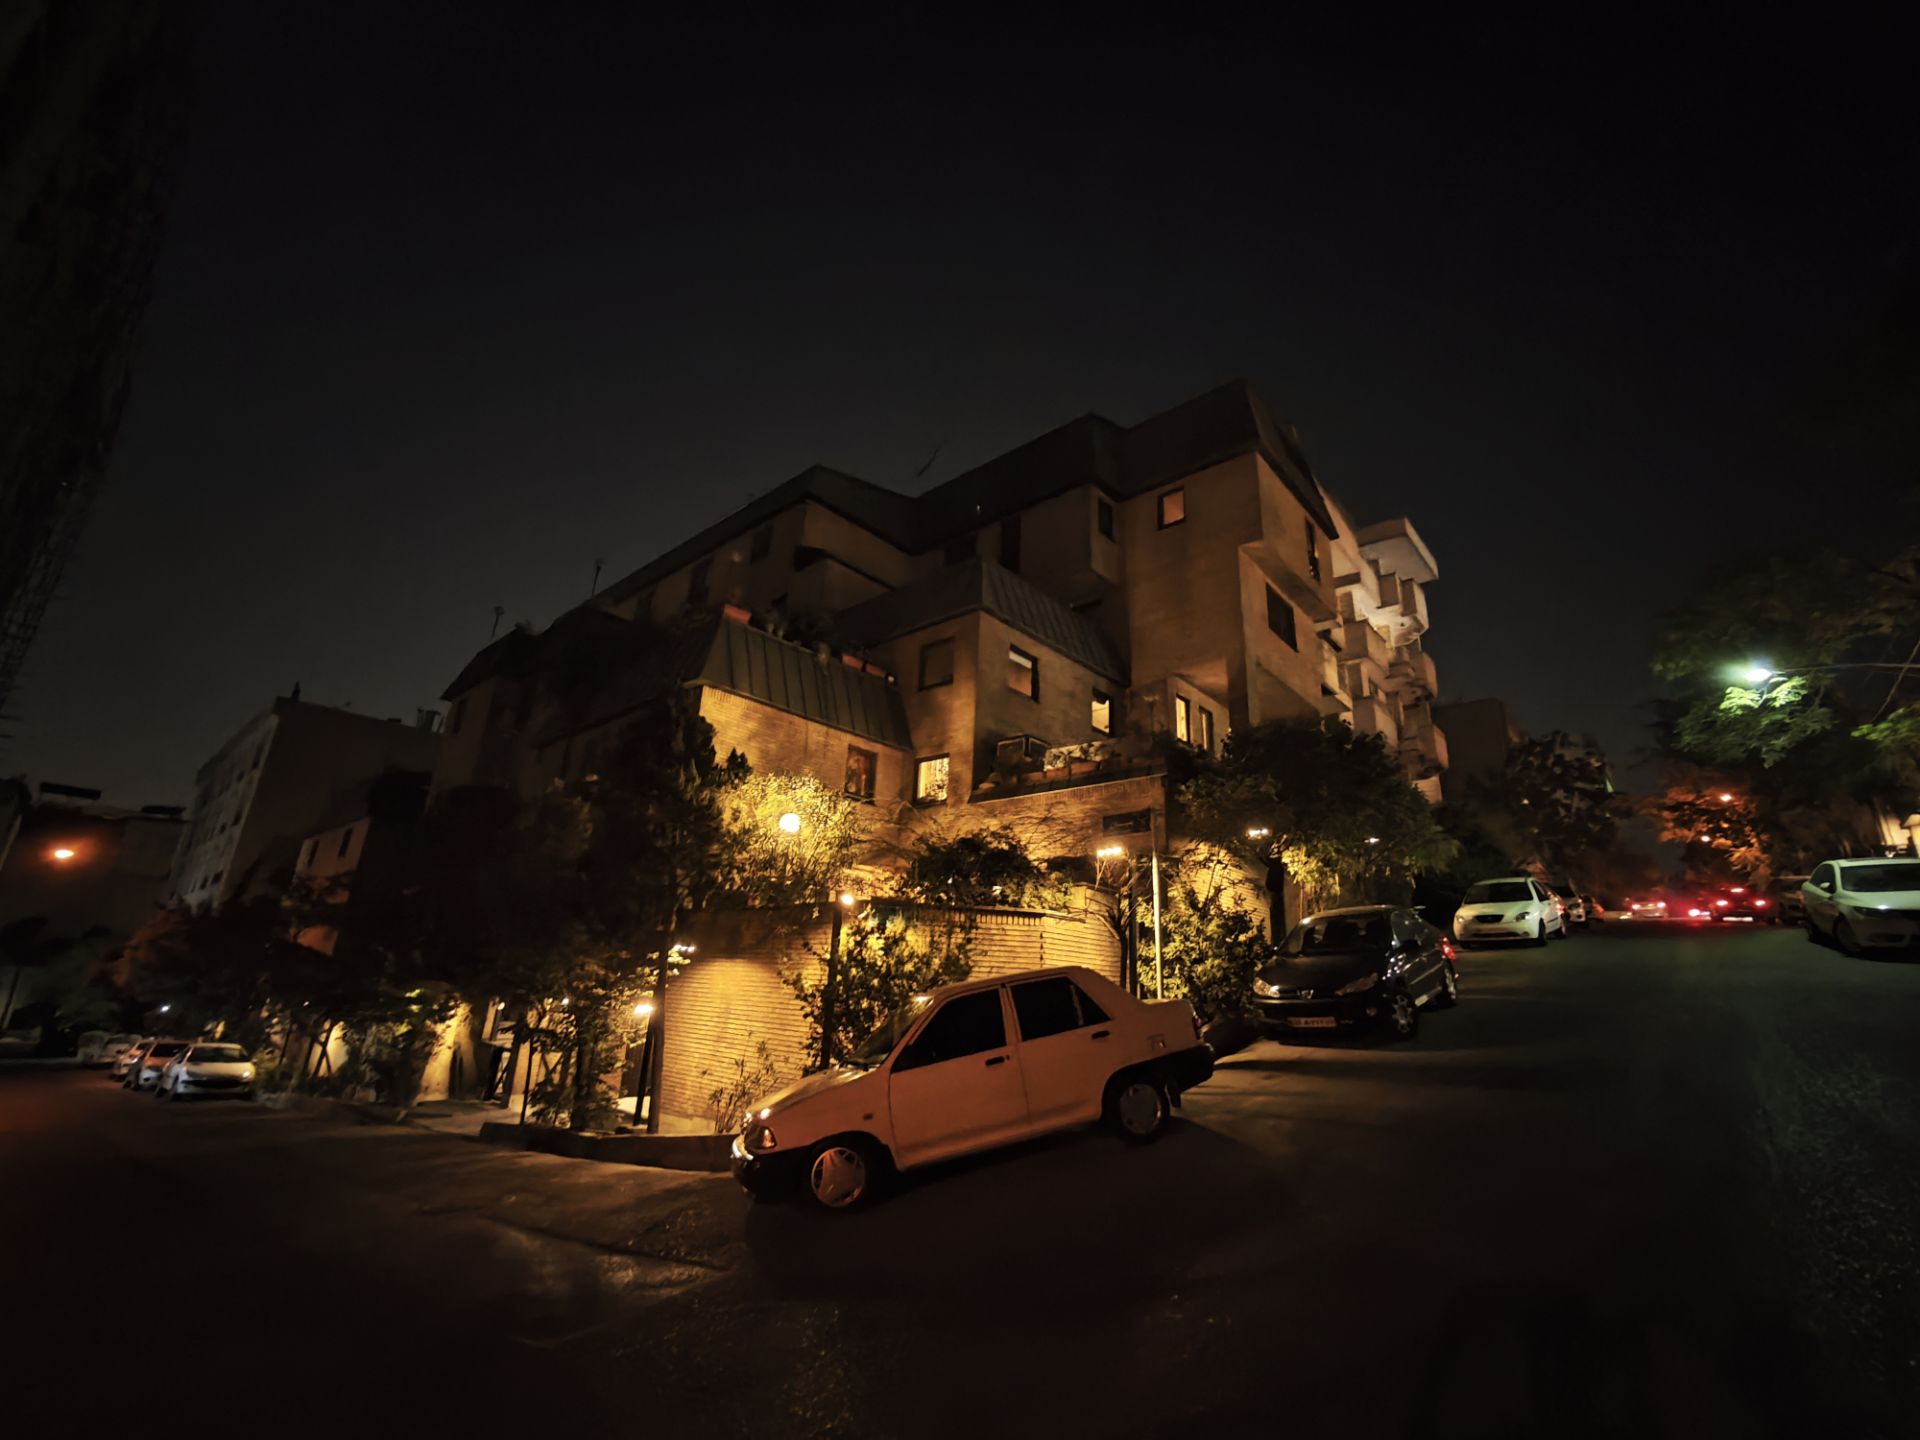 دوربین اولتراواید میکس فولد ۳ در شب - نایت مود